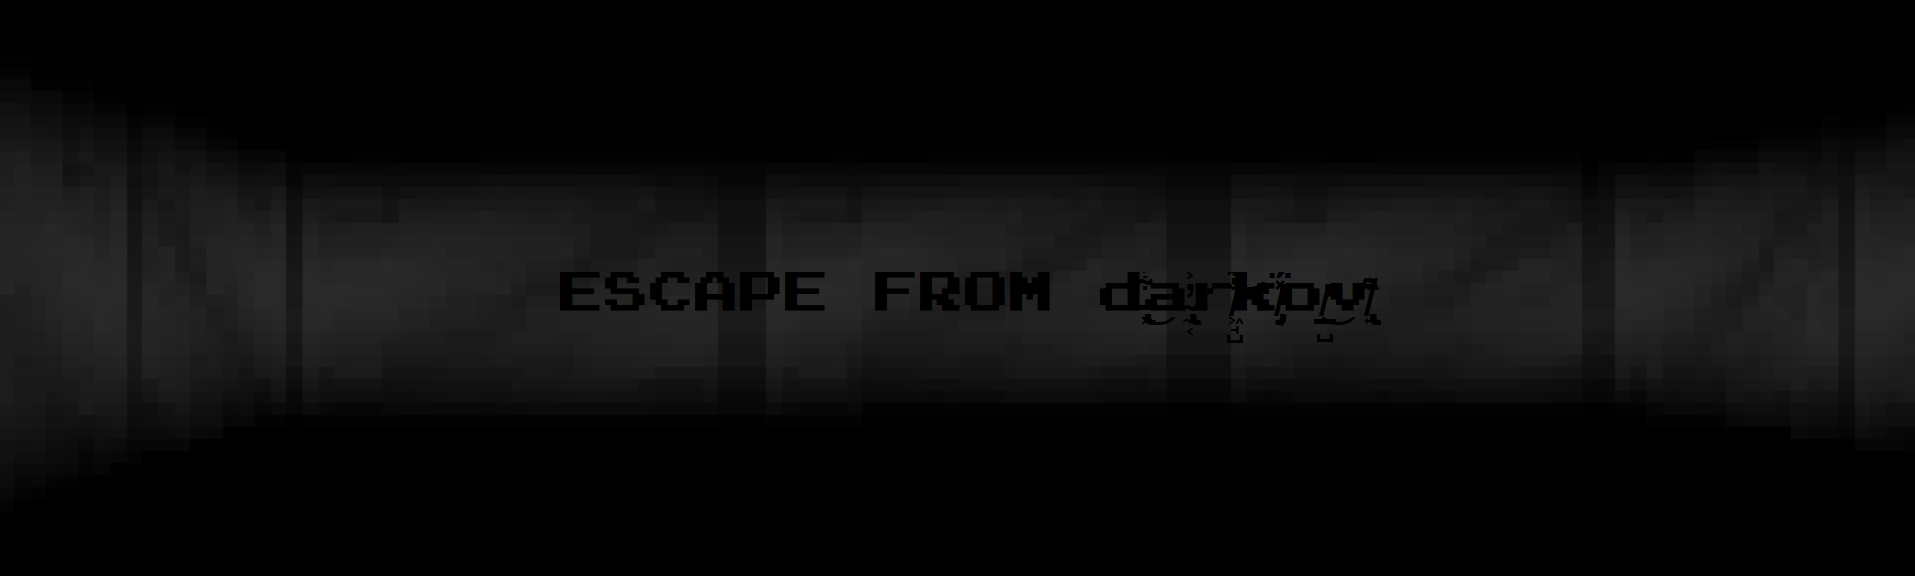 Escape From darkov